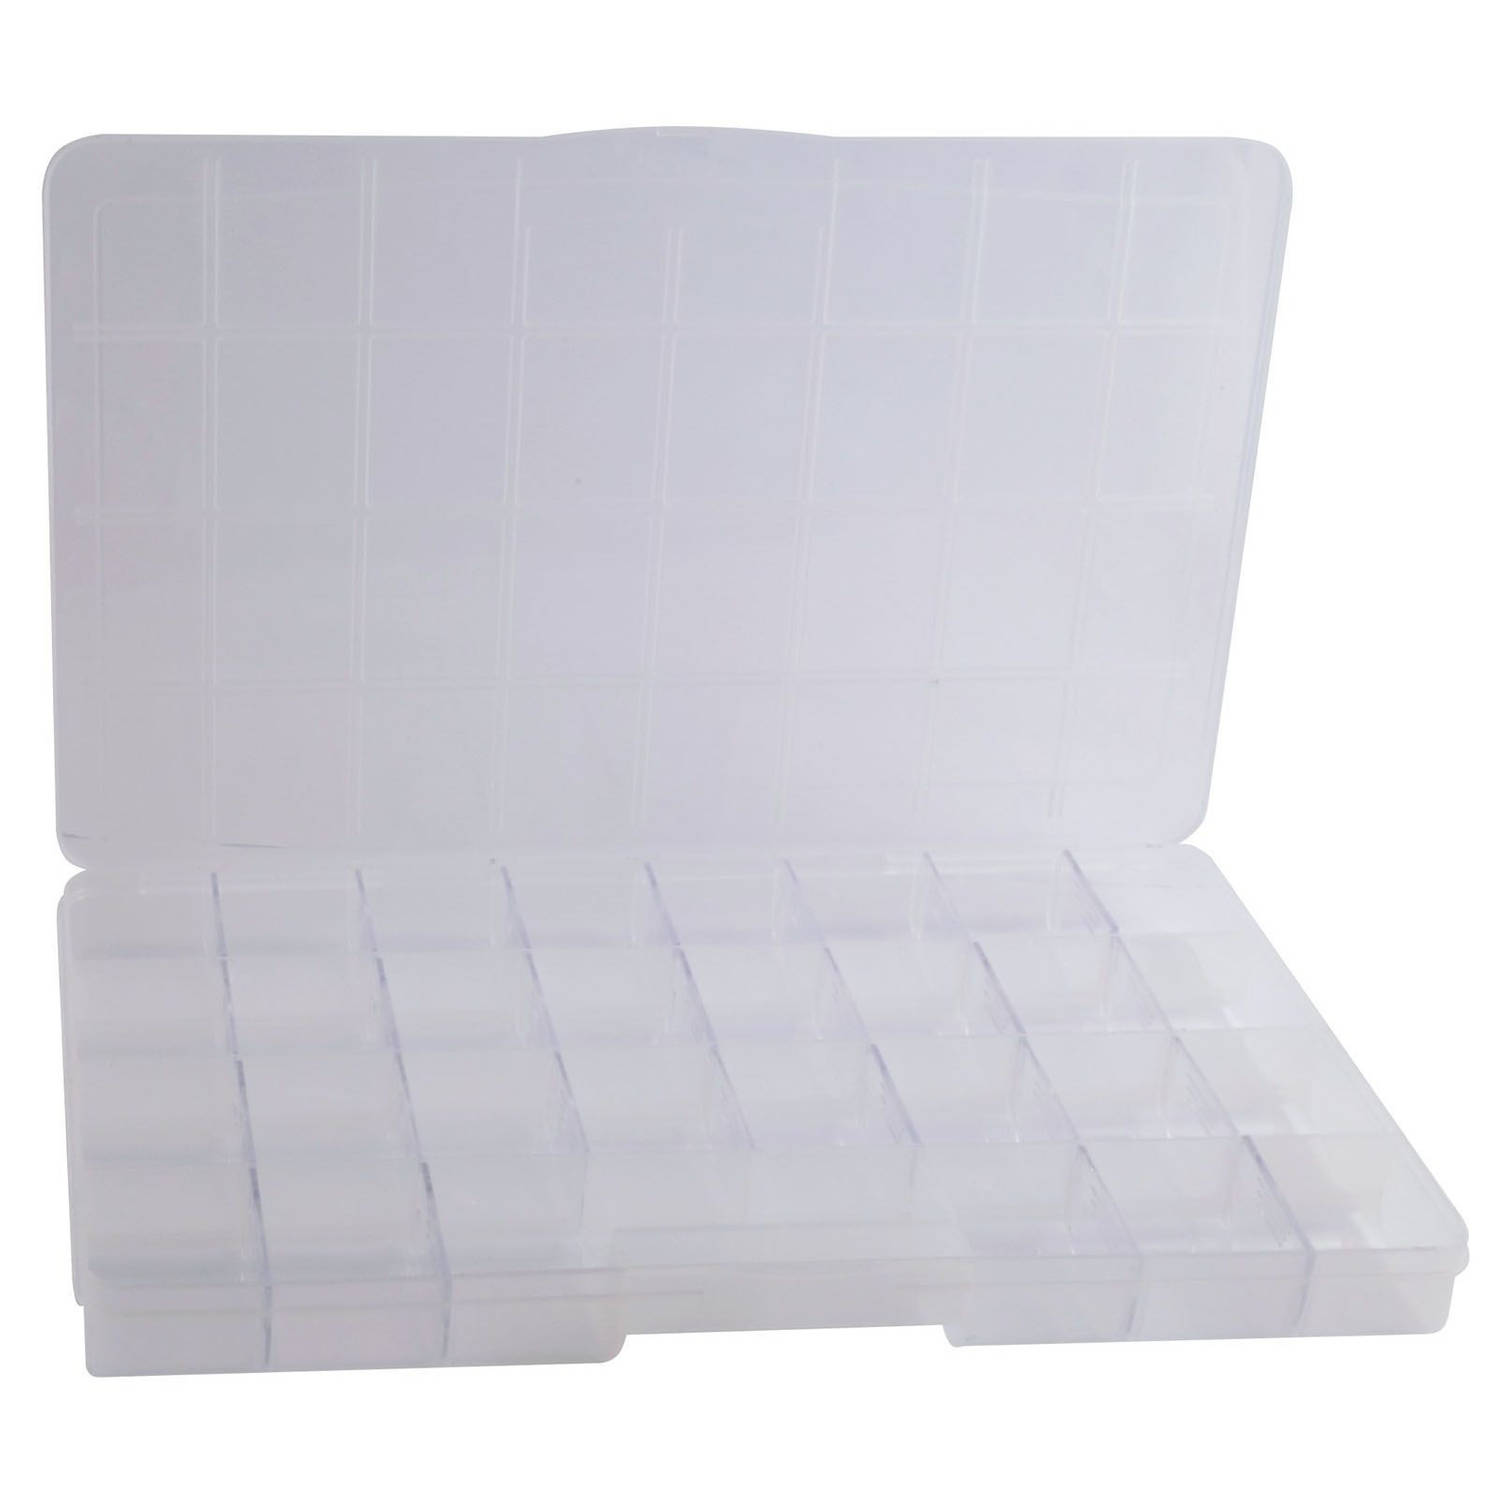 Goot maximaal Bouwen Opberg/sorteer box met 32 vakken 35 cm - Gereedsschapskist - Toolbox -  Opbergdoos voor kleine spullen | Blokker